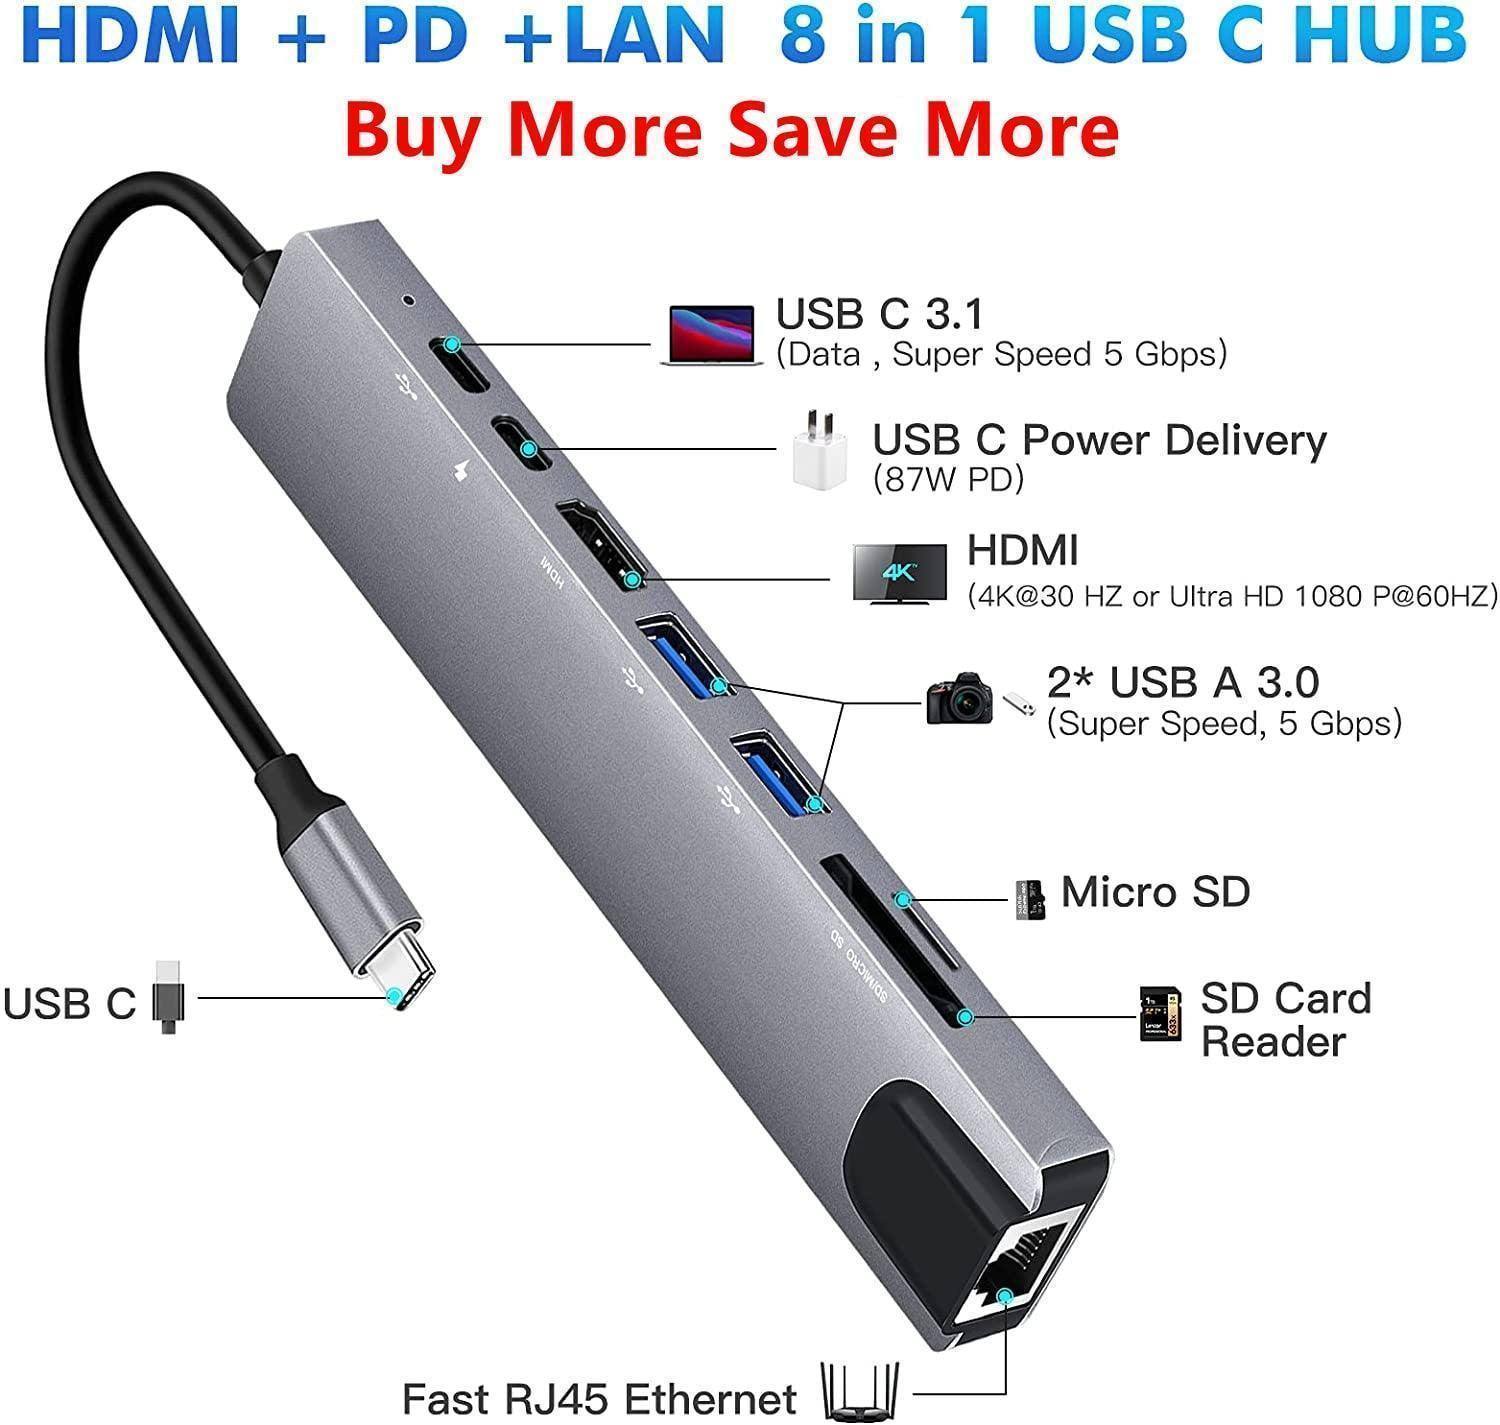 HUB 8 EN 1 USB TYPE C ( ) - Hubs et commutateurs Digital noWmad - Matériel télétravail : Équipez-vous pour une expérience 2.0 ! Équipements et accessoires de bureau pour un télétravail confortable, efficace et flexible. Aménagez votre espace et gagnez en ergonomie. Casques, chaises, sous-mains, mouse jigglers... Exploitez tout le potentiel du travail à distance pour trouver votre équilibre, en voyage comme à la maison.